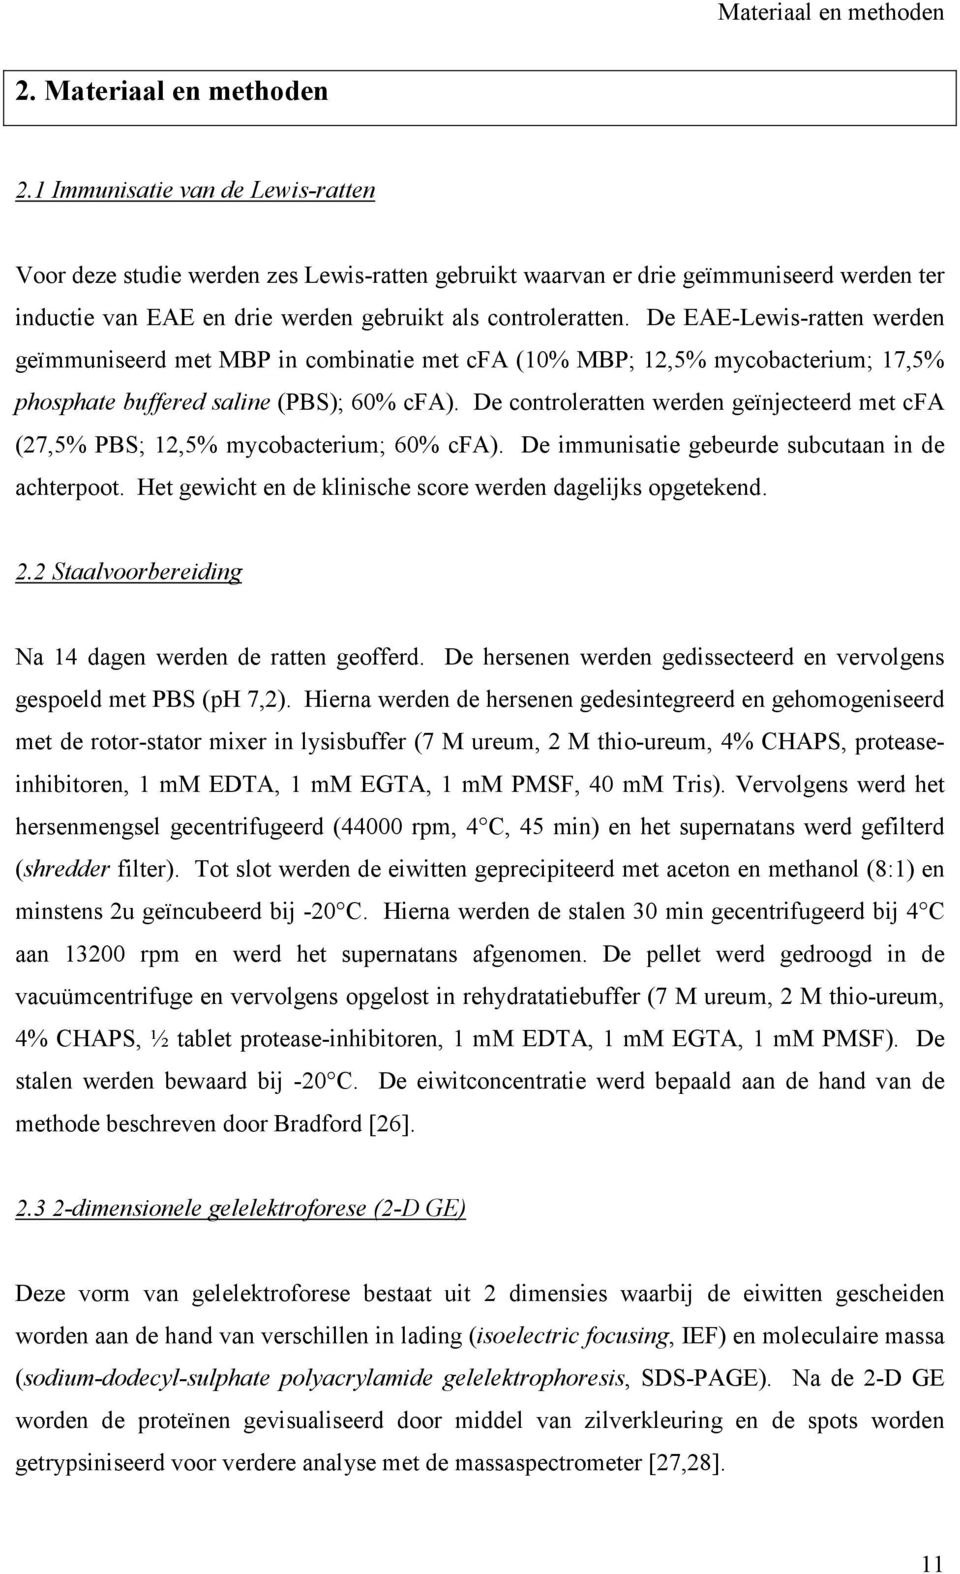 De EAE-Lewis-ratten werden geïmmuniseerd met MBP in combinatie met cfa (10% MBP; 12,5% mycobacterium; 17,5% phosphate buffered saline (PBS); 60% cfa).